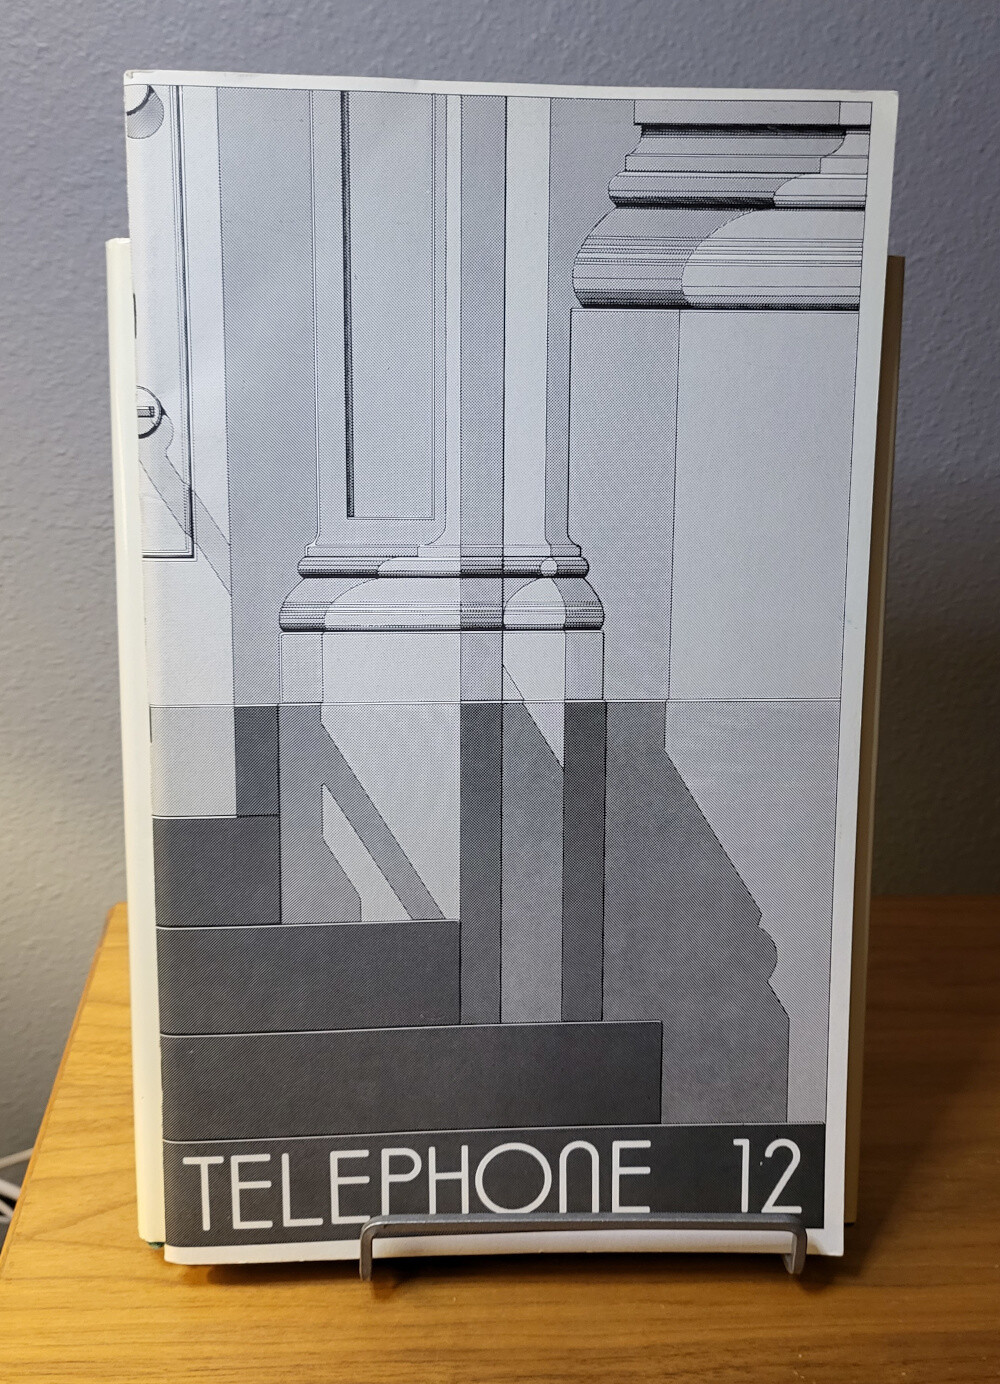 Telephone 12